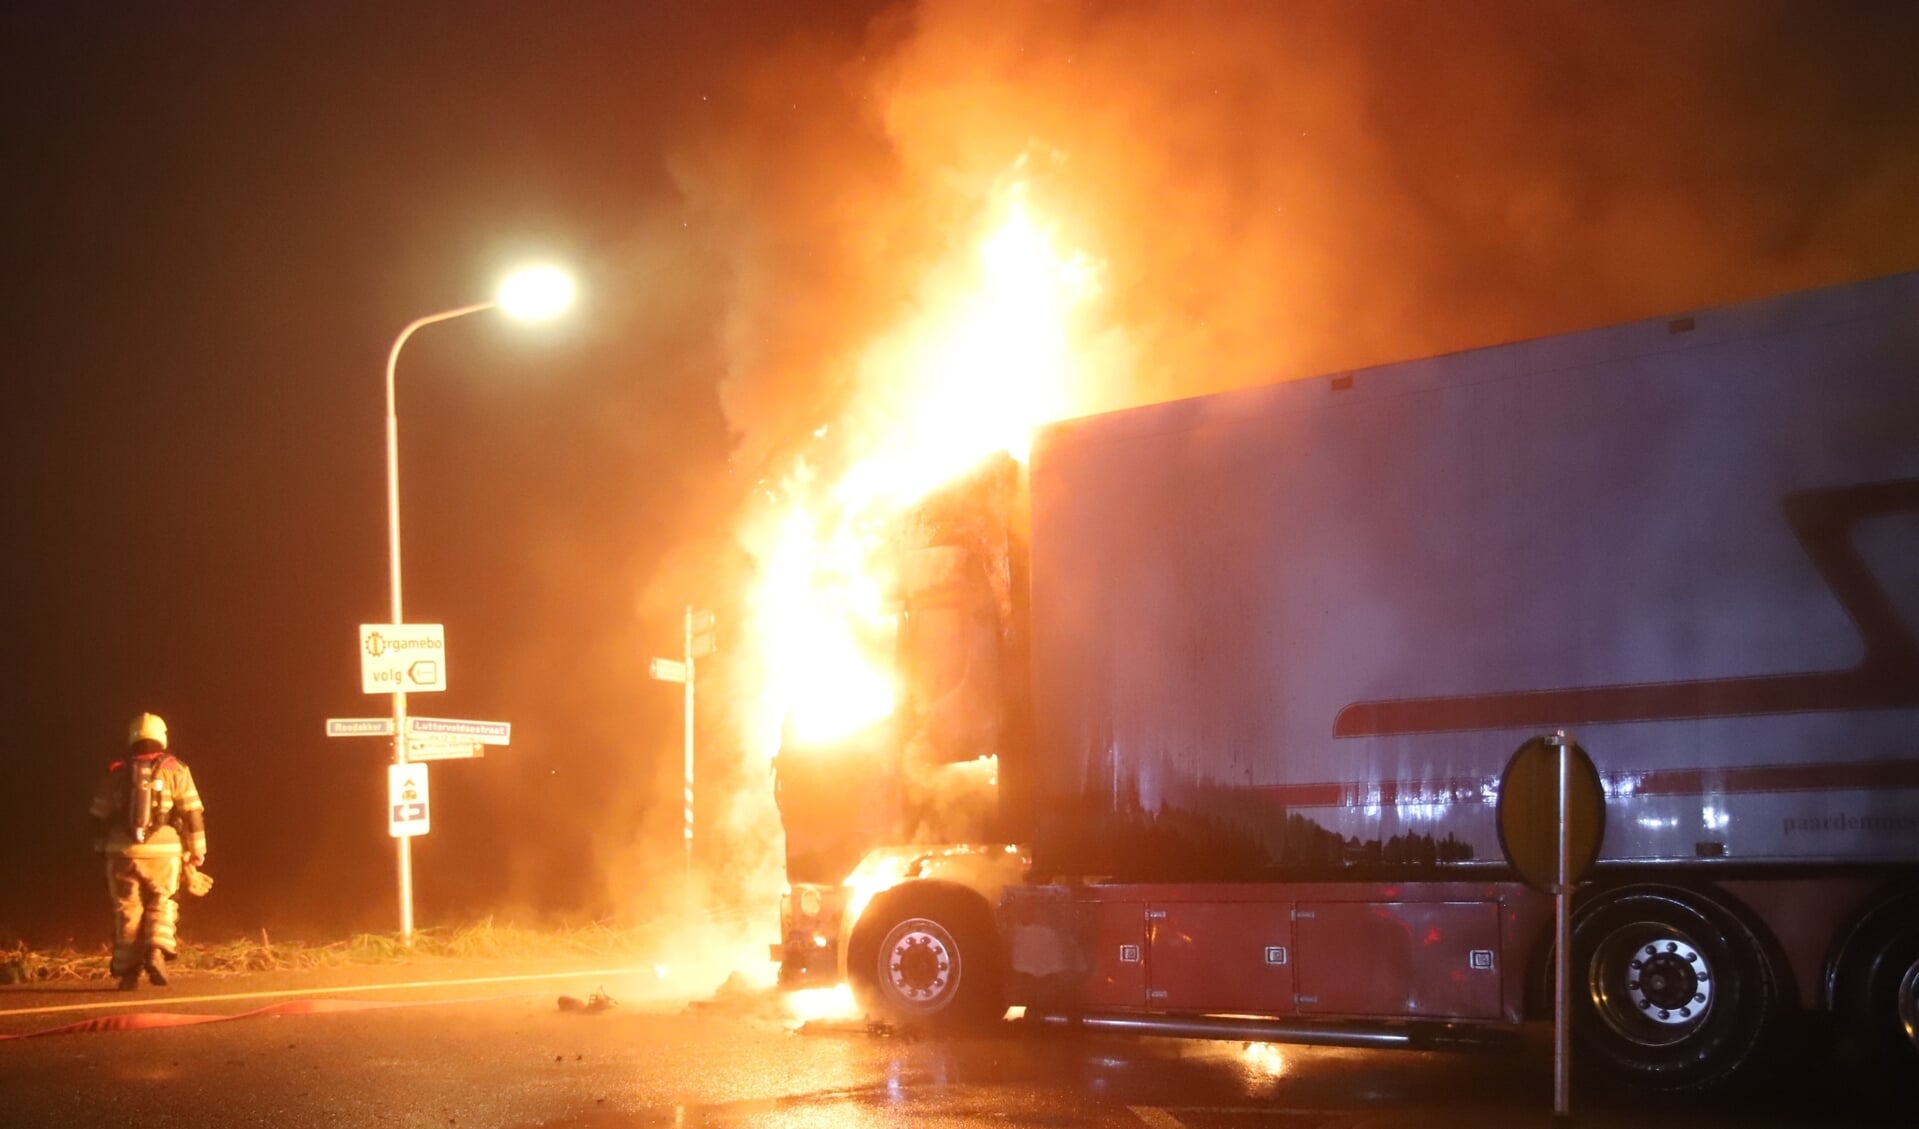 De vlammen slaan hoog uit de cabine van de met mest geladen vrachtauto.